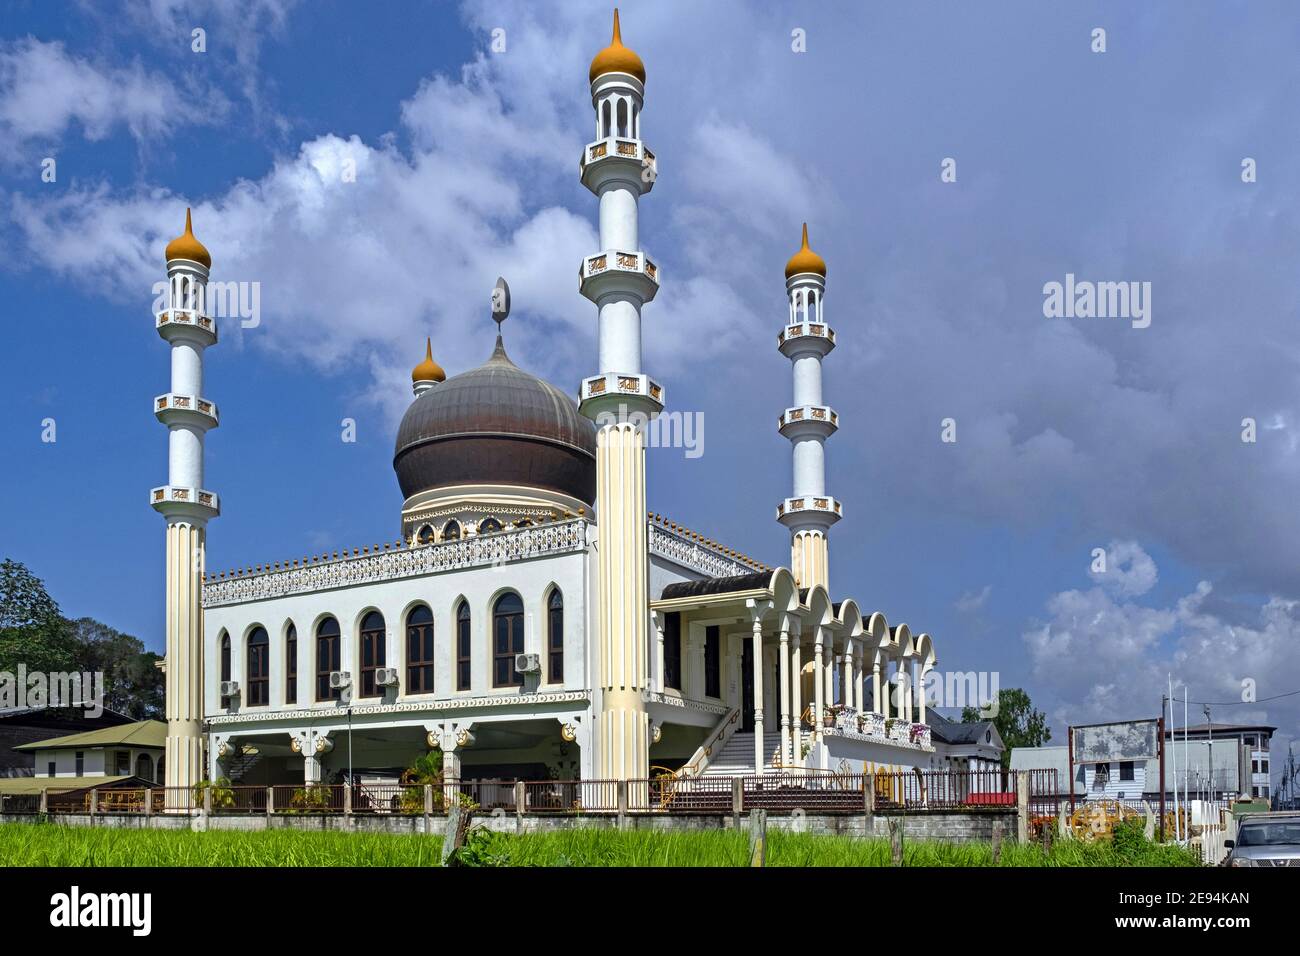 Ahmadiyya Anjuman Isha’at Islam Mosque Keizerstraat, sede del Movimiento Ahmadiyya de Lahore para la propagación del Islam, Paramaribo, Suriname Foto de stock